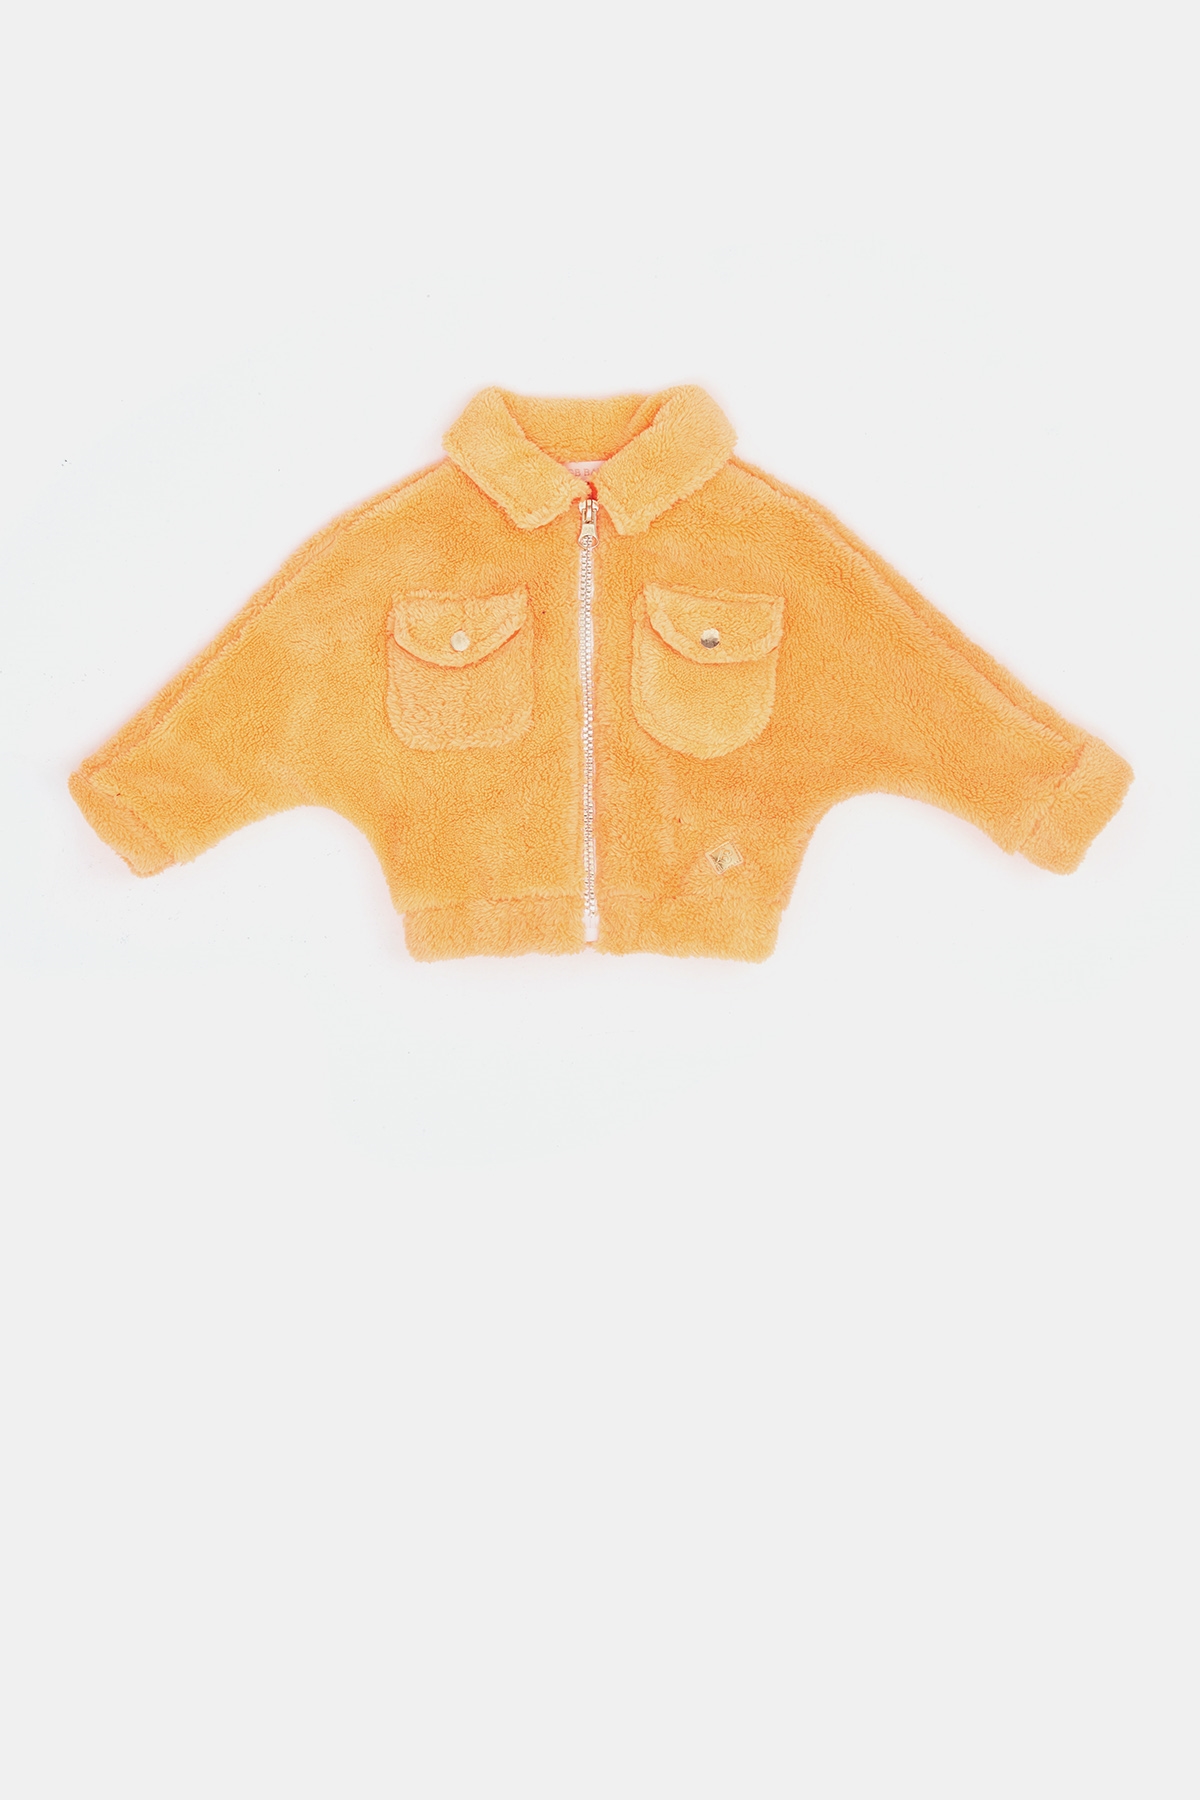 Kız Bebek Neon Oranj Ceket